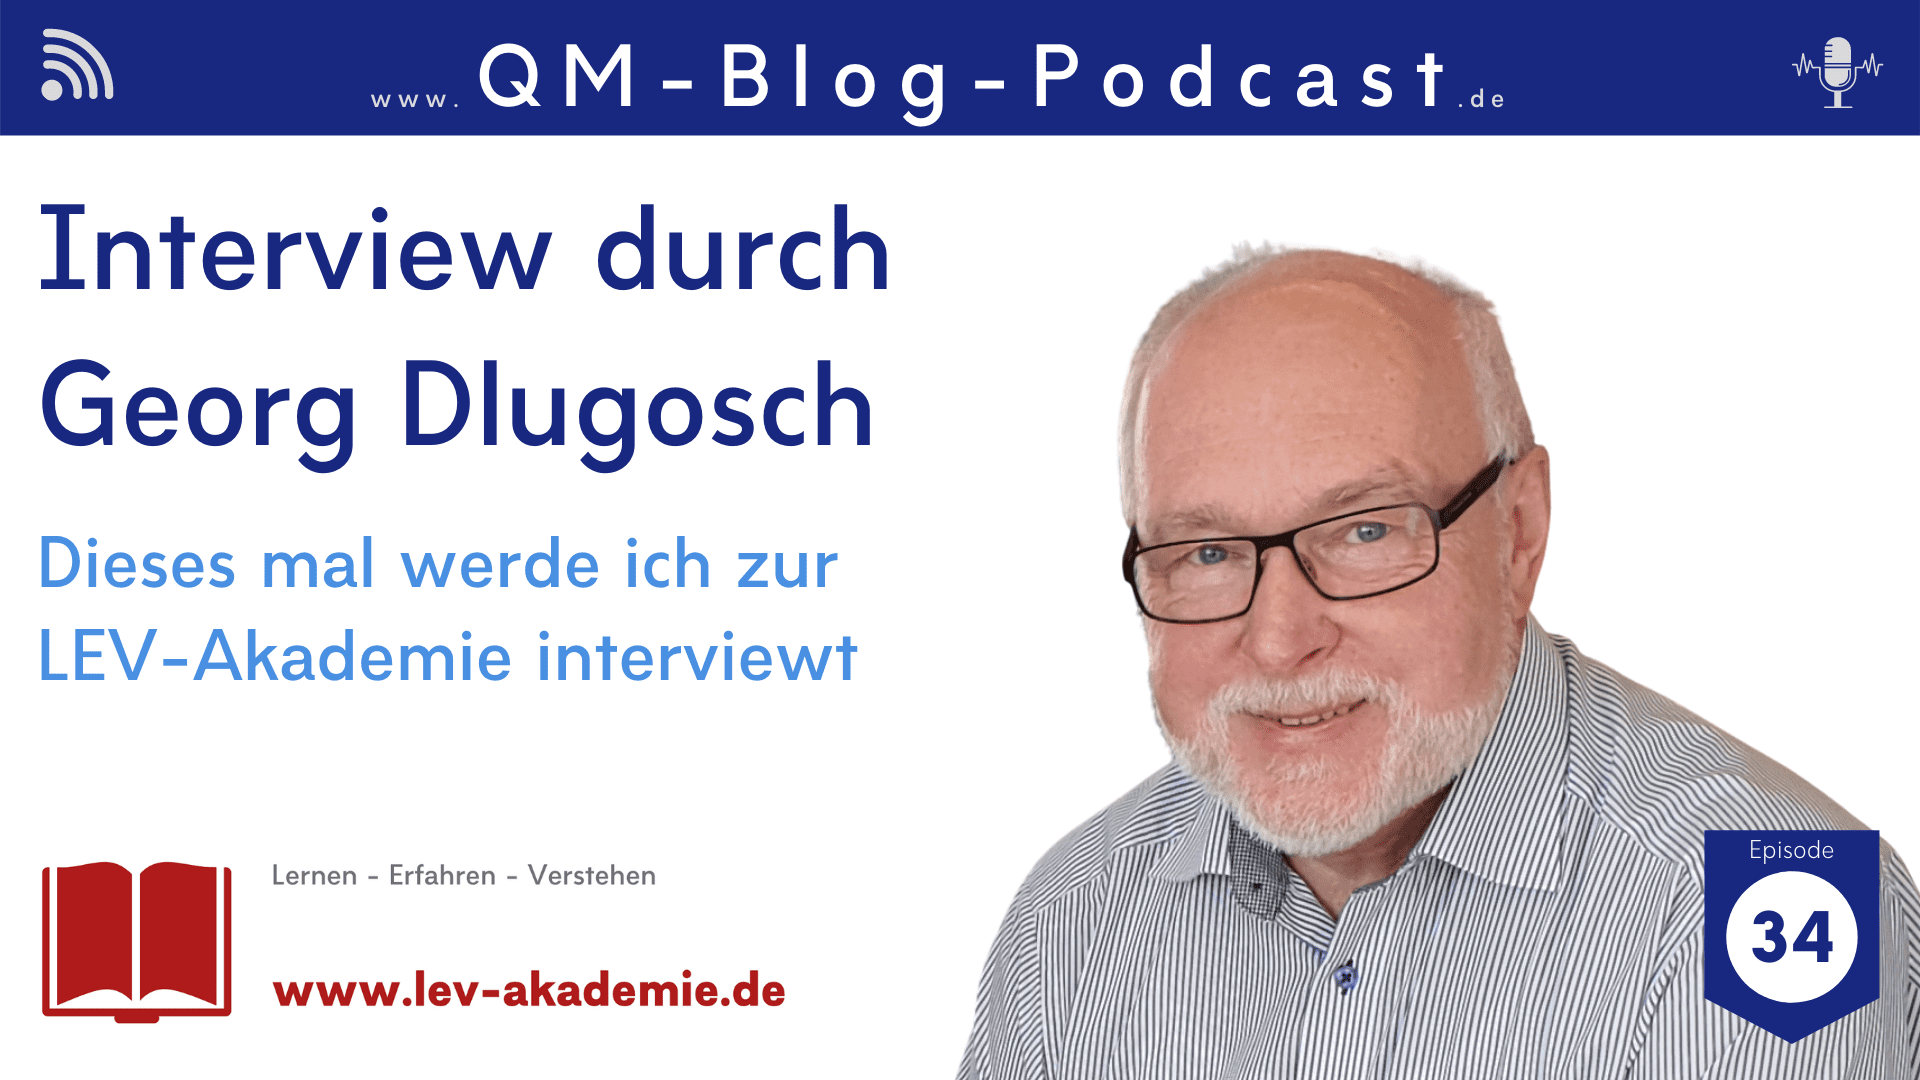 In dieser Episode des QM-Blog-Podcasts interviewt Georg mich (Stephan Joseph) zum Thema Online-Videotrainings.